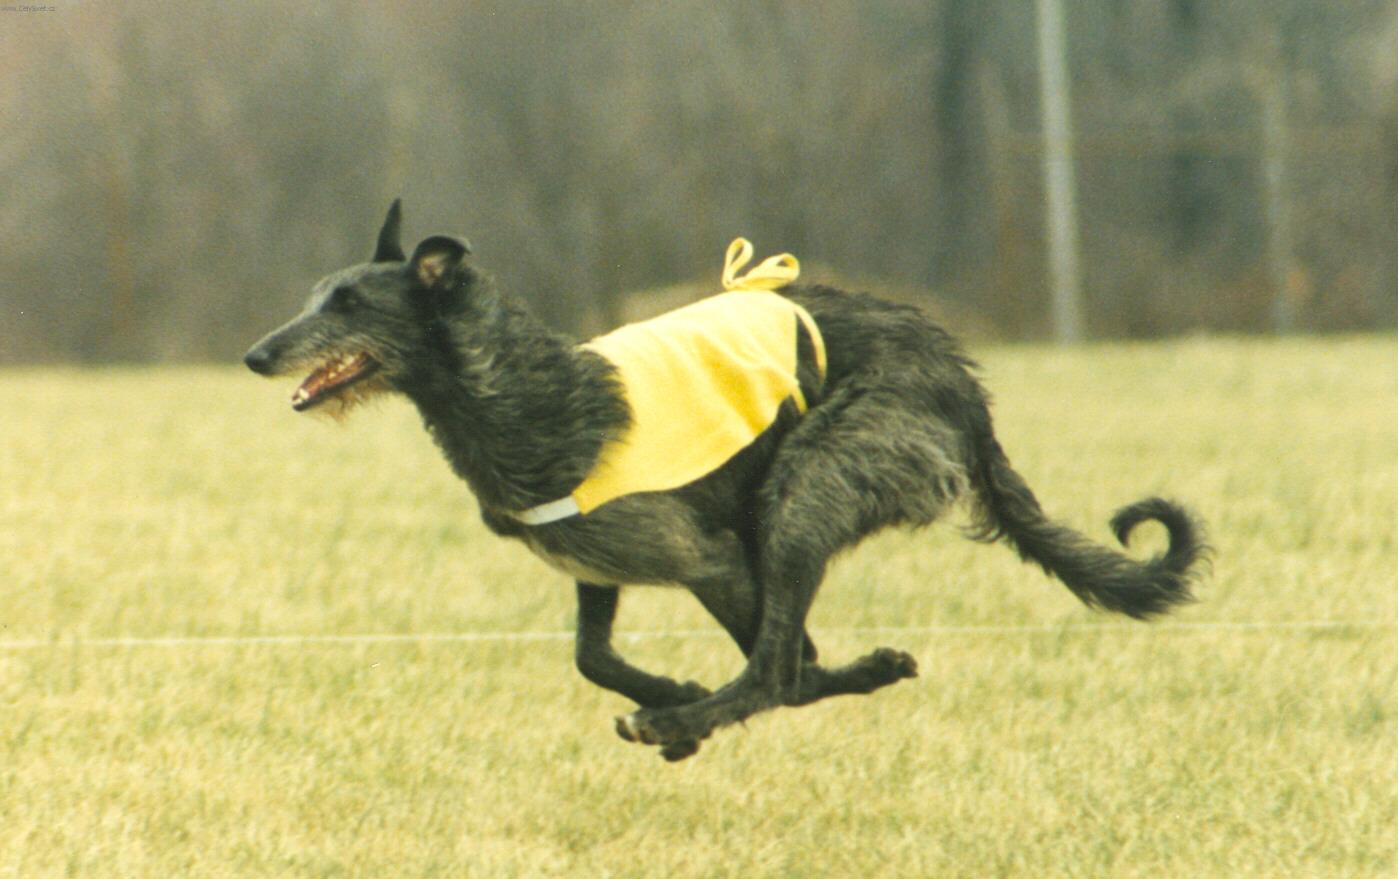 Foto: Dirhound while running